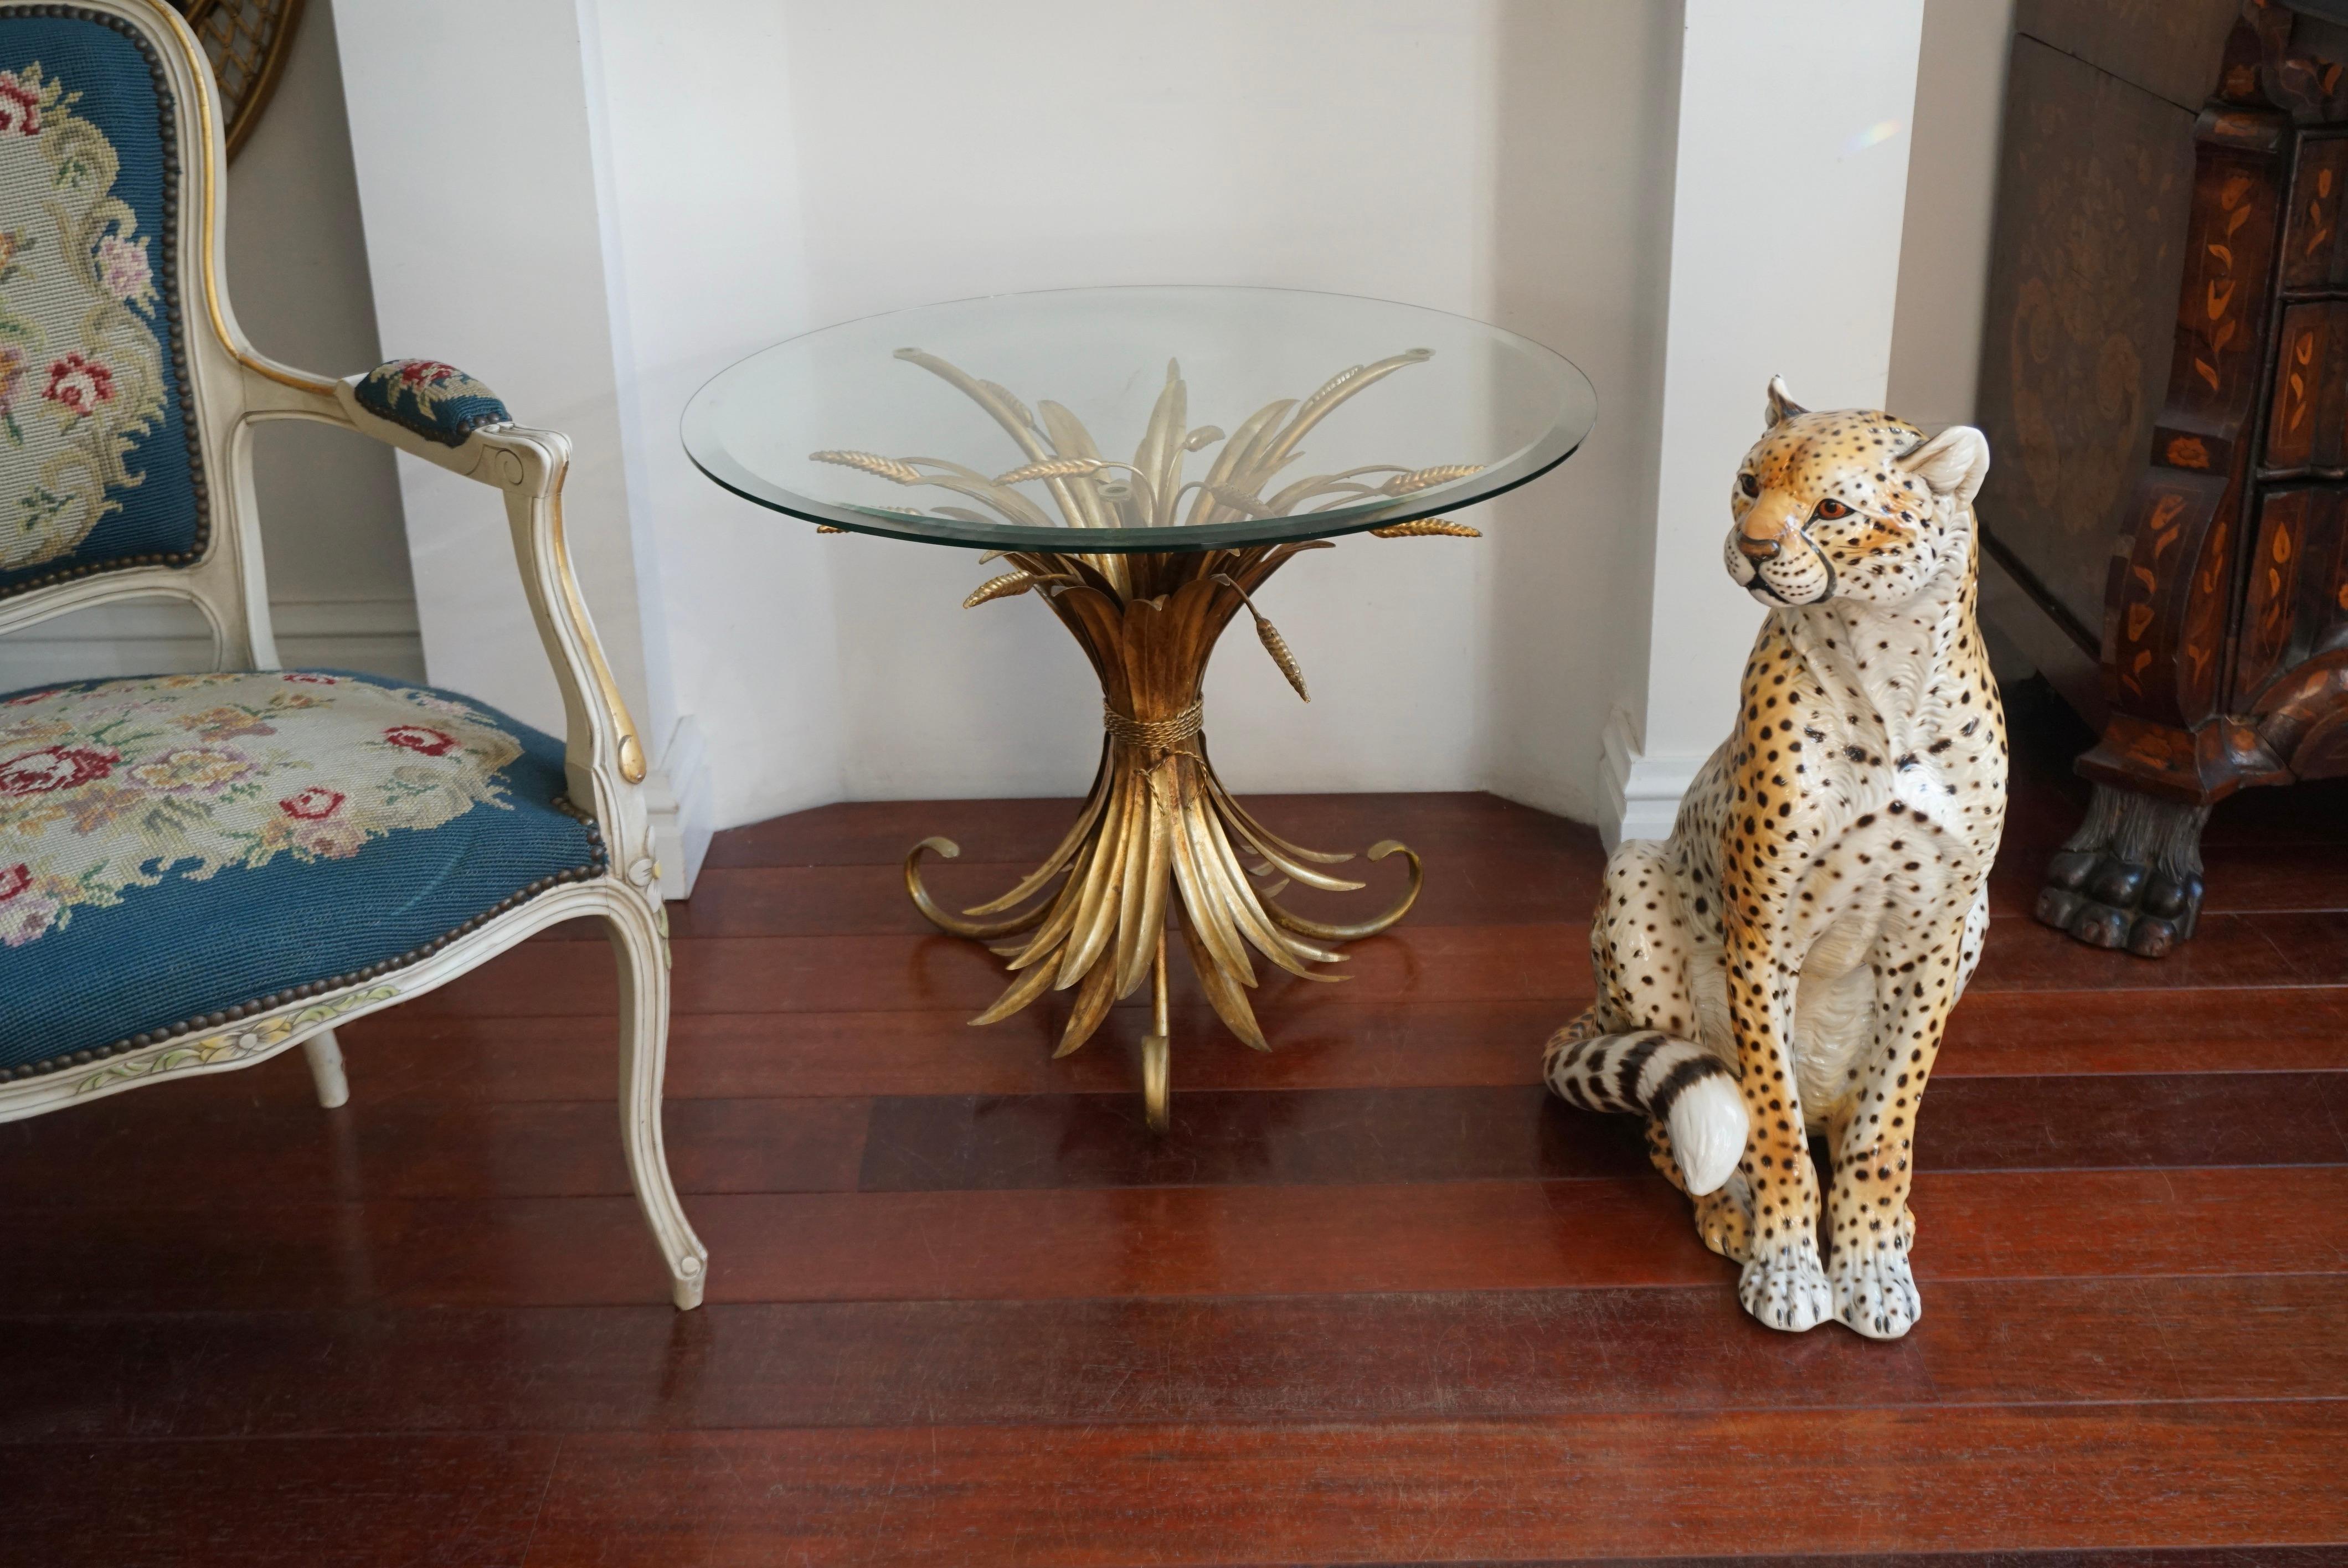 Coco Chanel Couchtisch, Frankreich, vergoldet, 1970er Jahre.

Wunderschöner skulpturaler Tisch aus vergoldetem Metall mit Weizengarbe und runder Glasplatte. Im Stil der berühmten Coco Chanel-Tische zeigt dieser originelle Vintage-Tisch hohe Garben